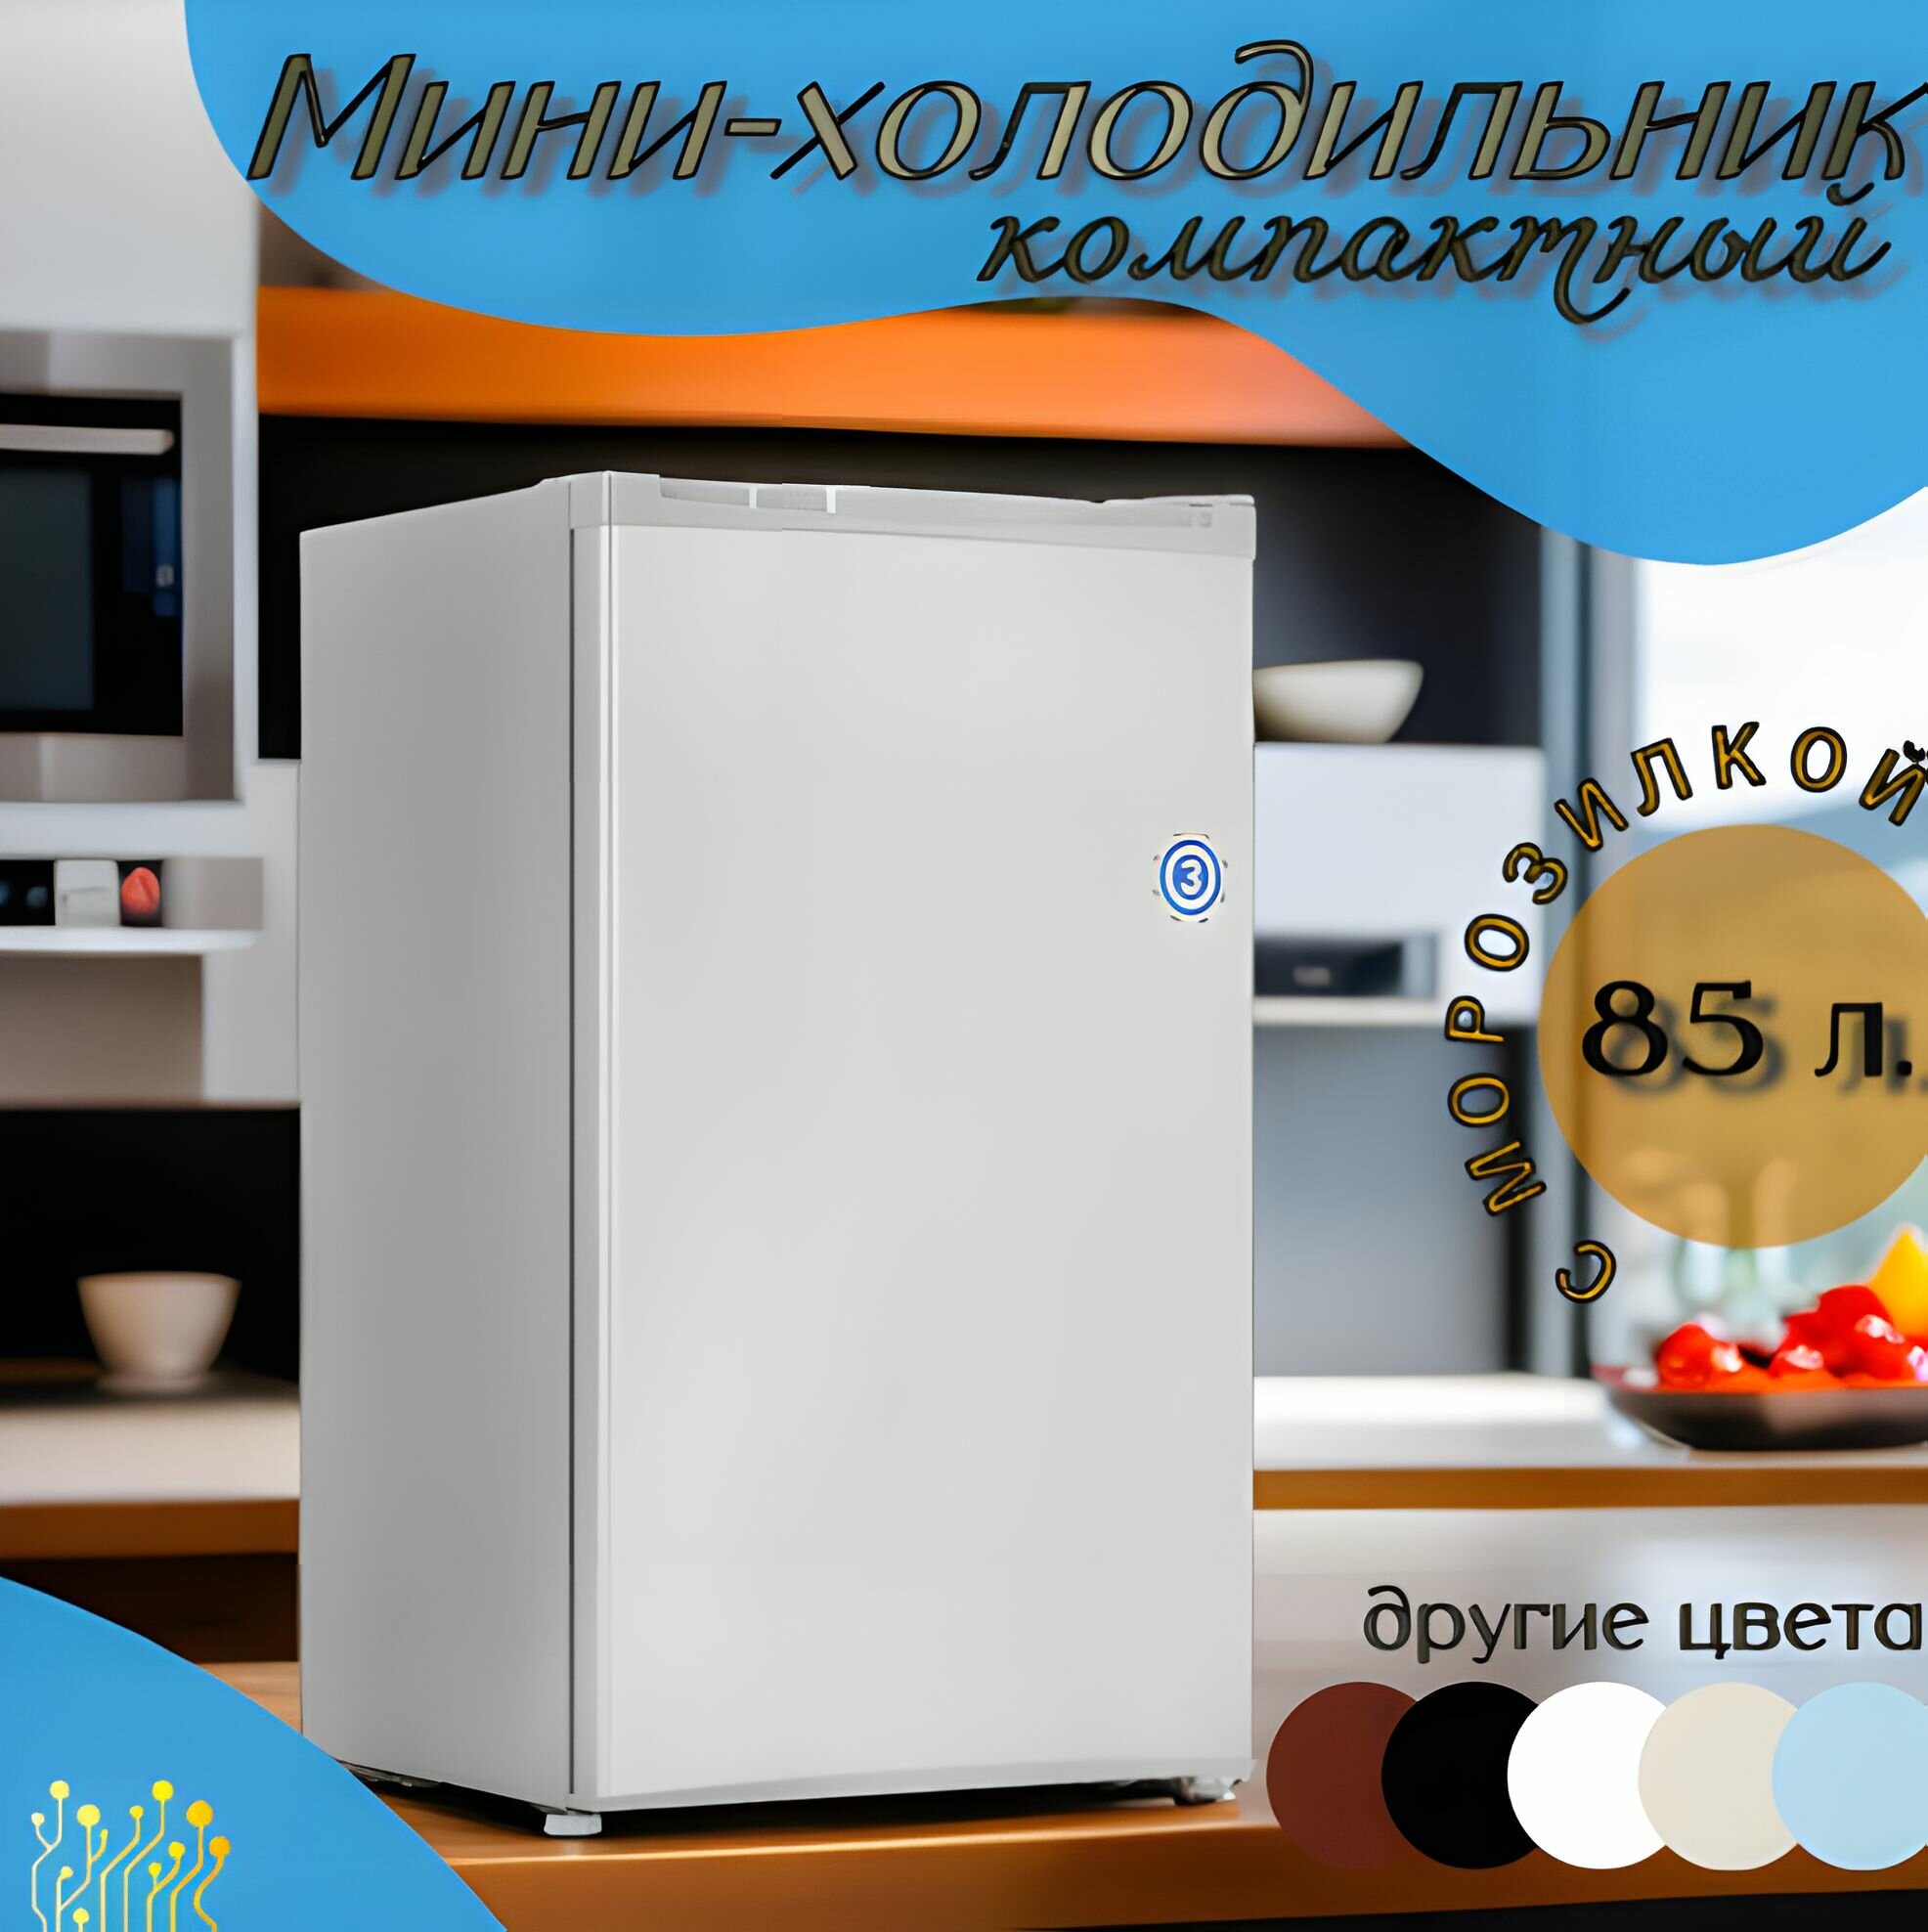 Мини-холодильник однокамерный с морозилкой TechFurn 85 л, серый, 47.4 см х 83.1 см х 44.7 см / Маленький компактный холодильник для напитков, барный / С морозильной камерой